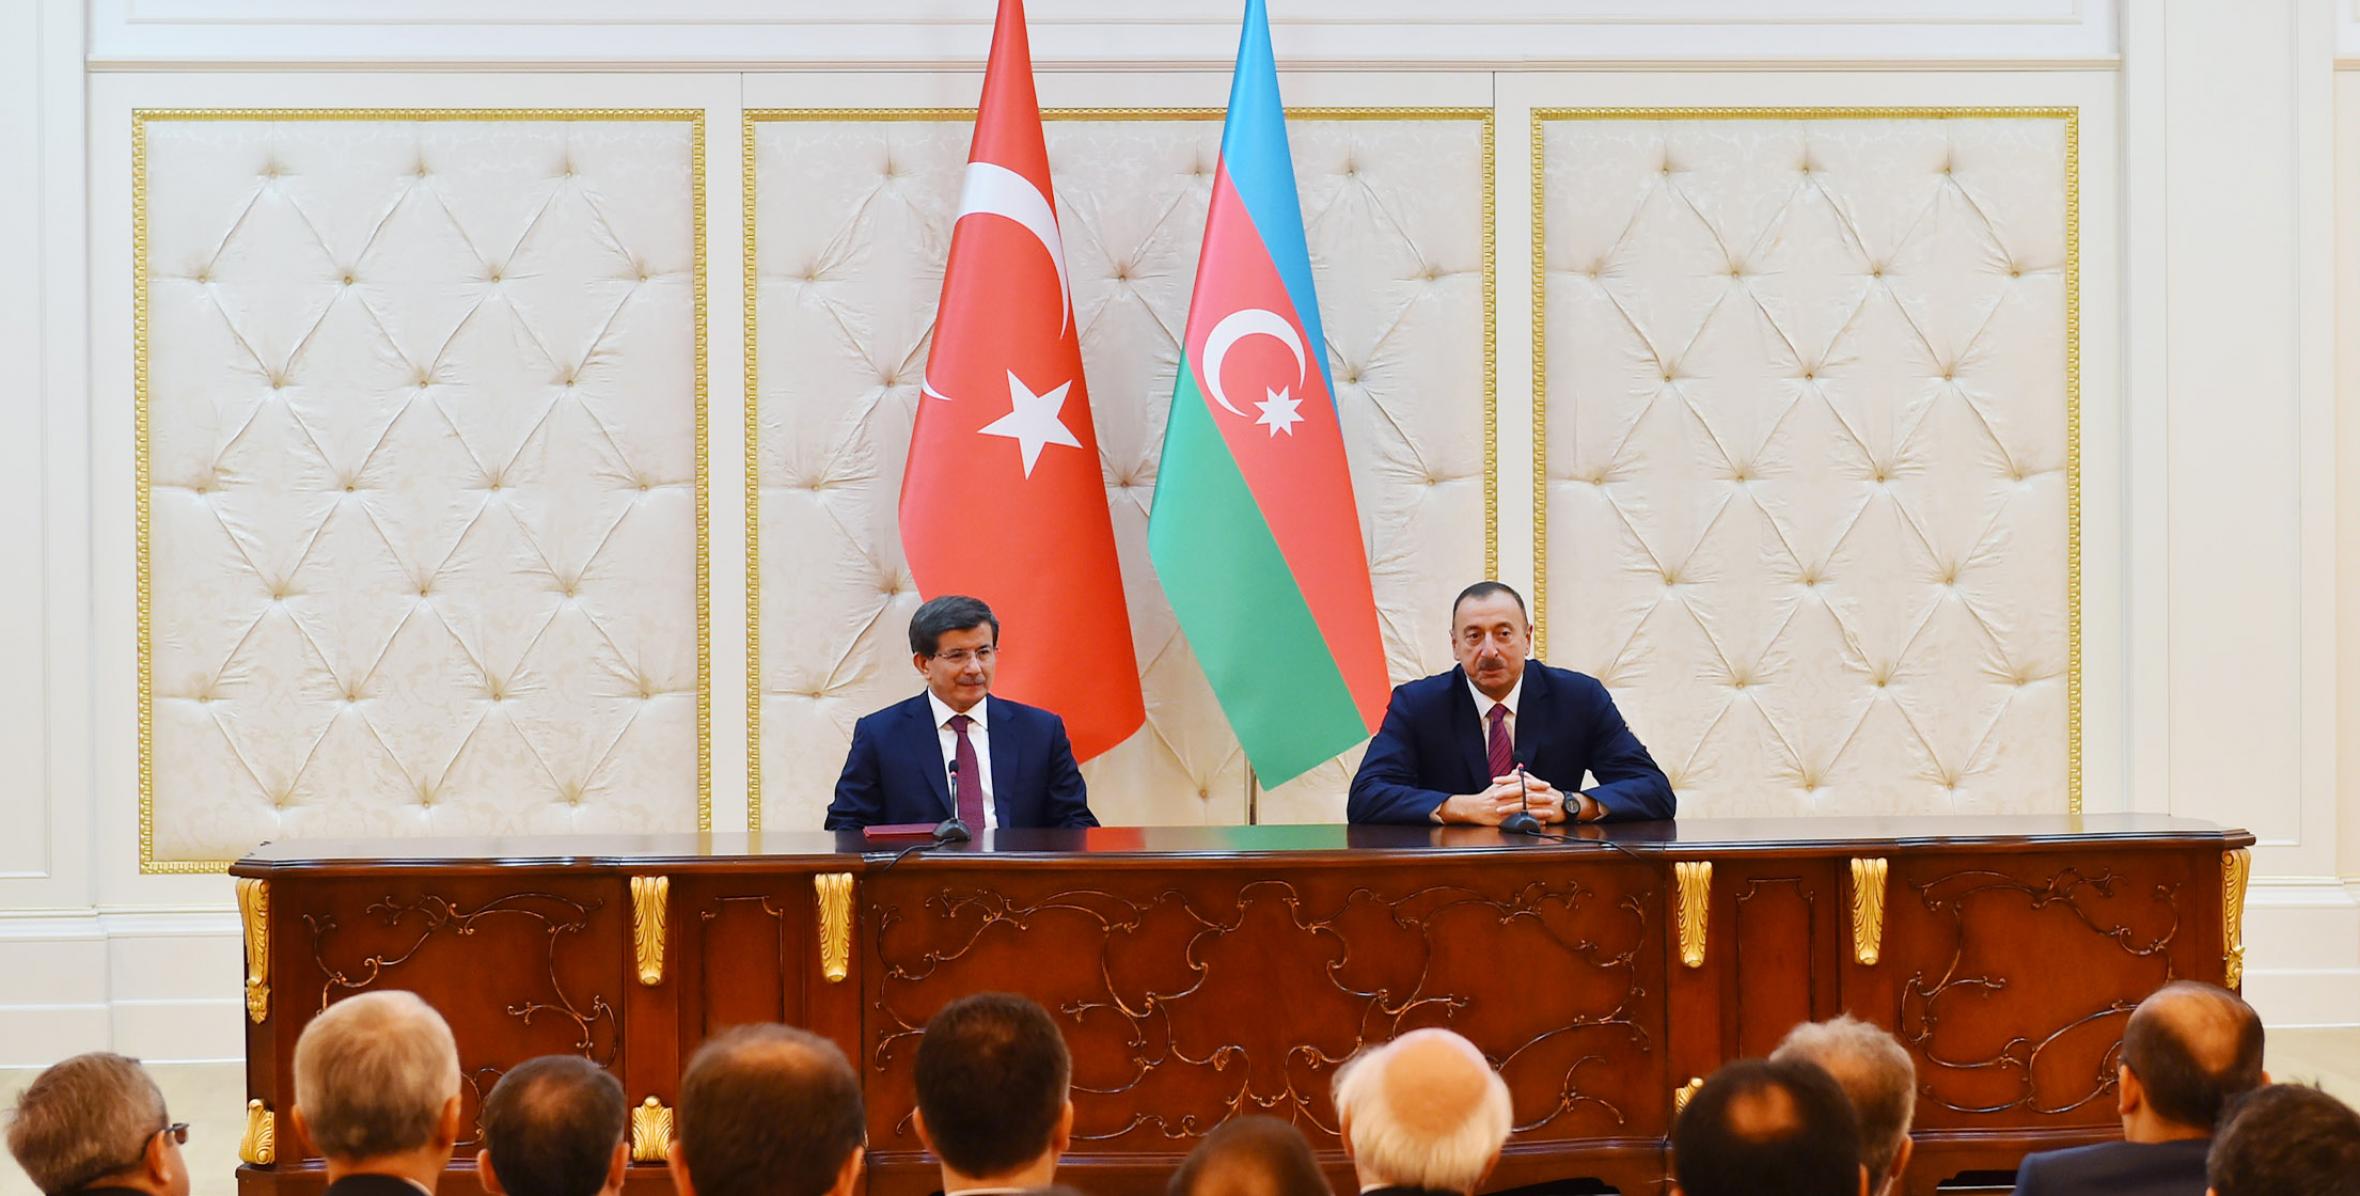 Ильхам Алиев и премьер-министр Турции Ахмет Давудоглу выступили с заявлениями для печати